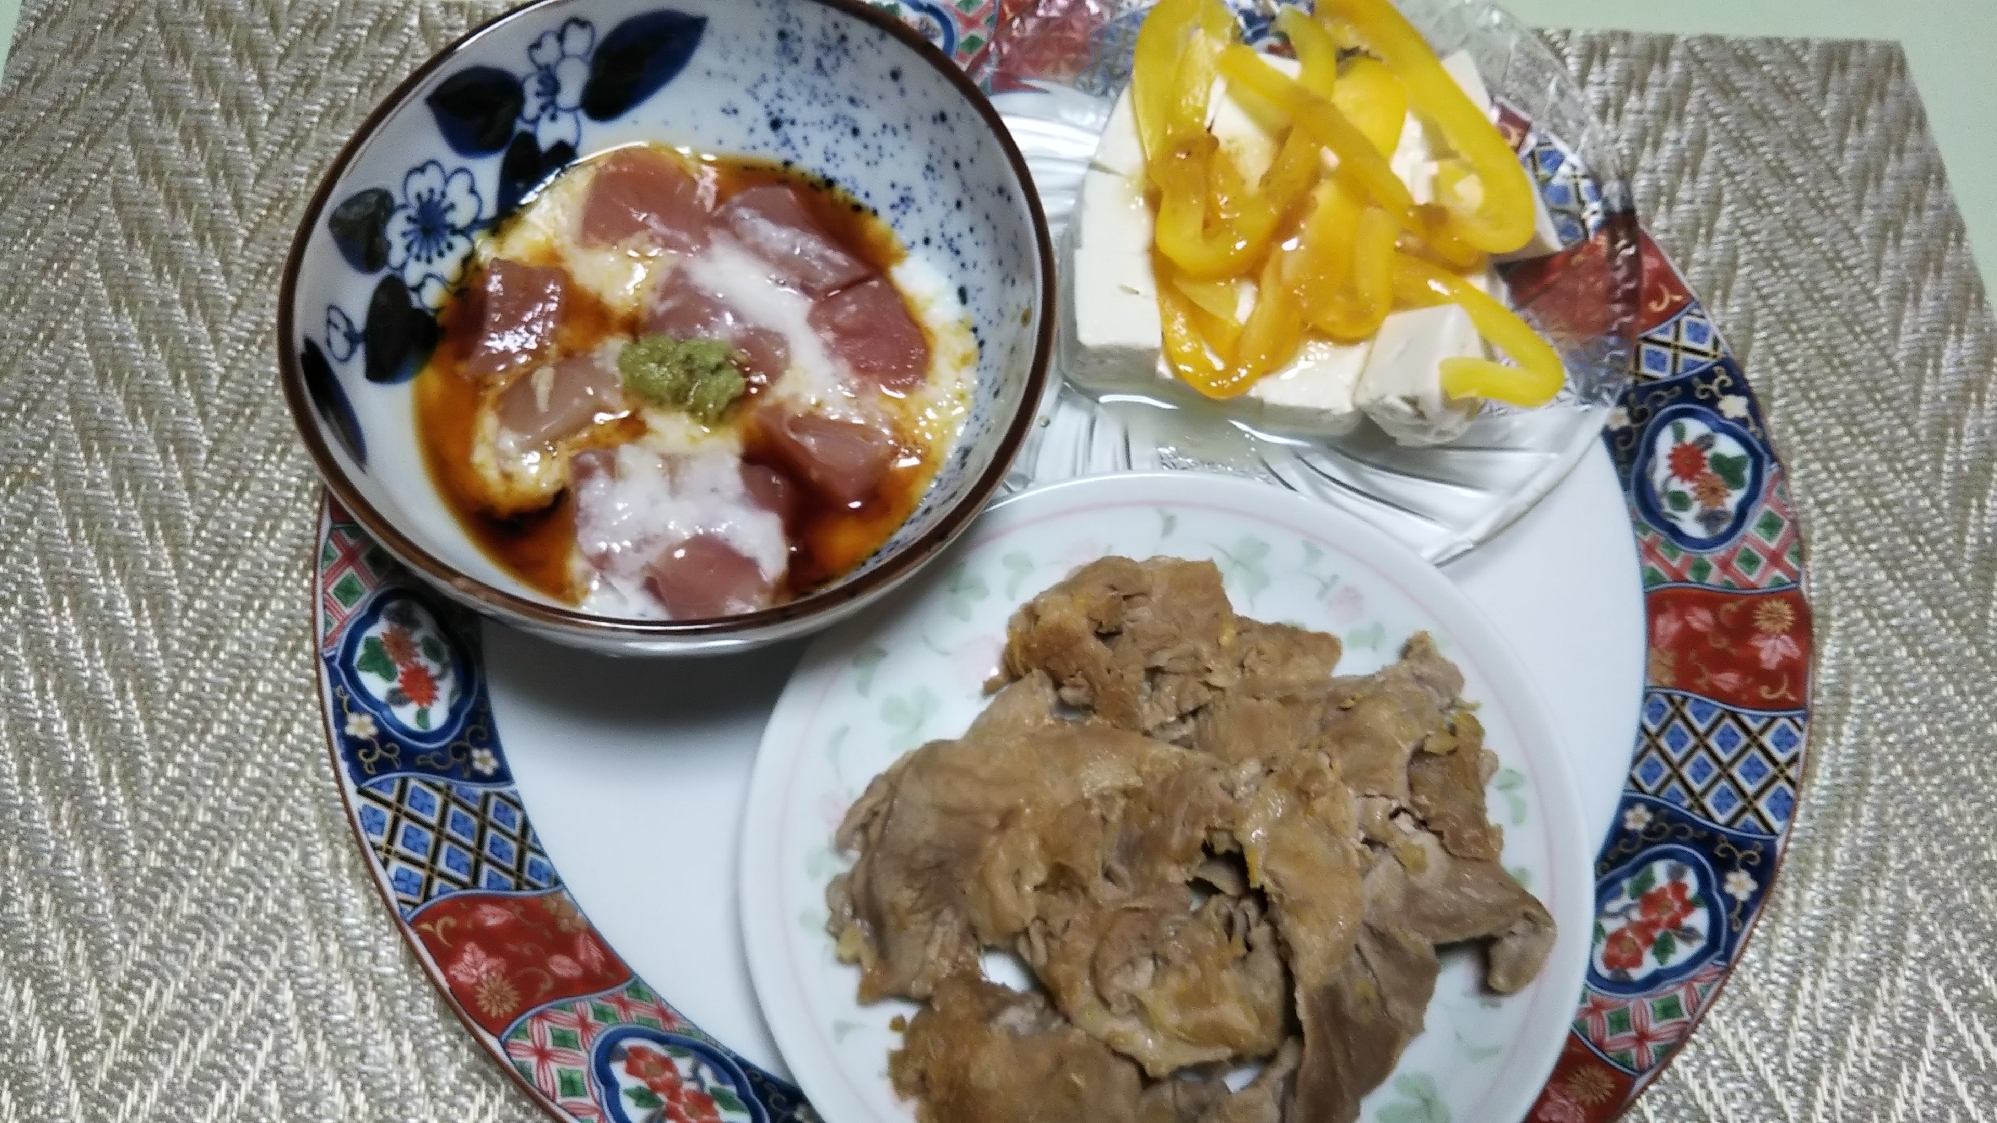 マグロ山かけと豚生姜焼きと豆腐パプリカのサラダ